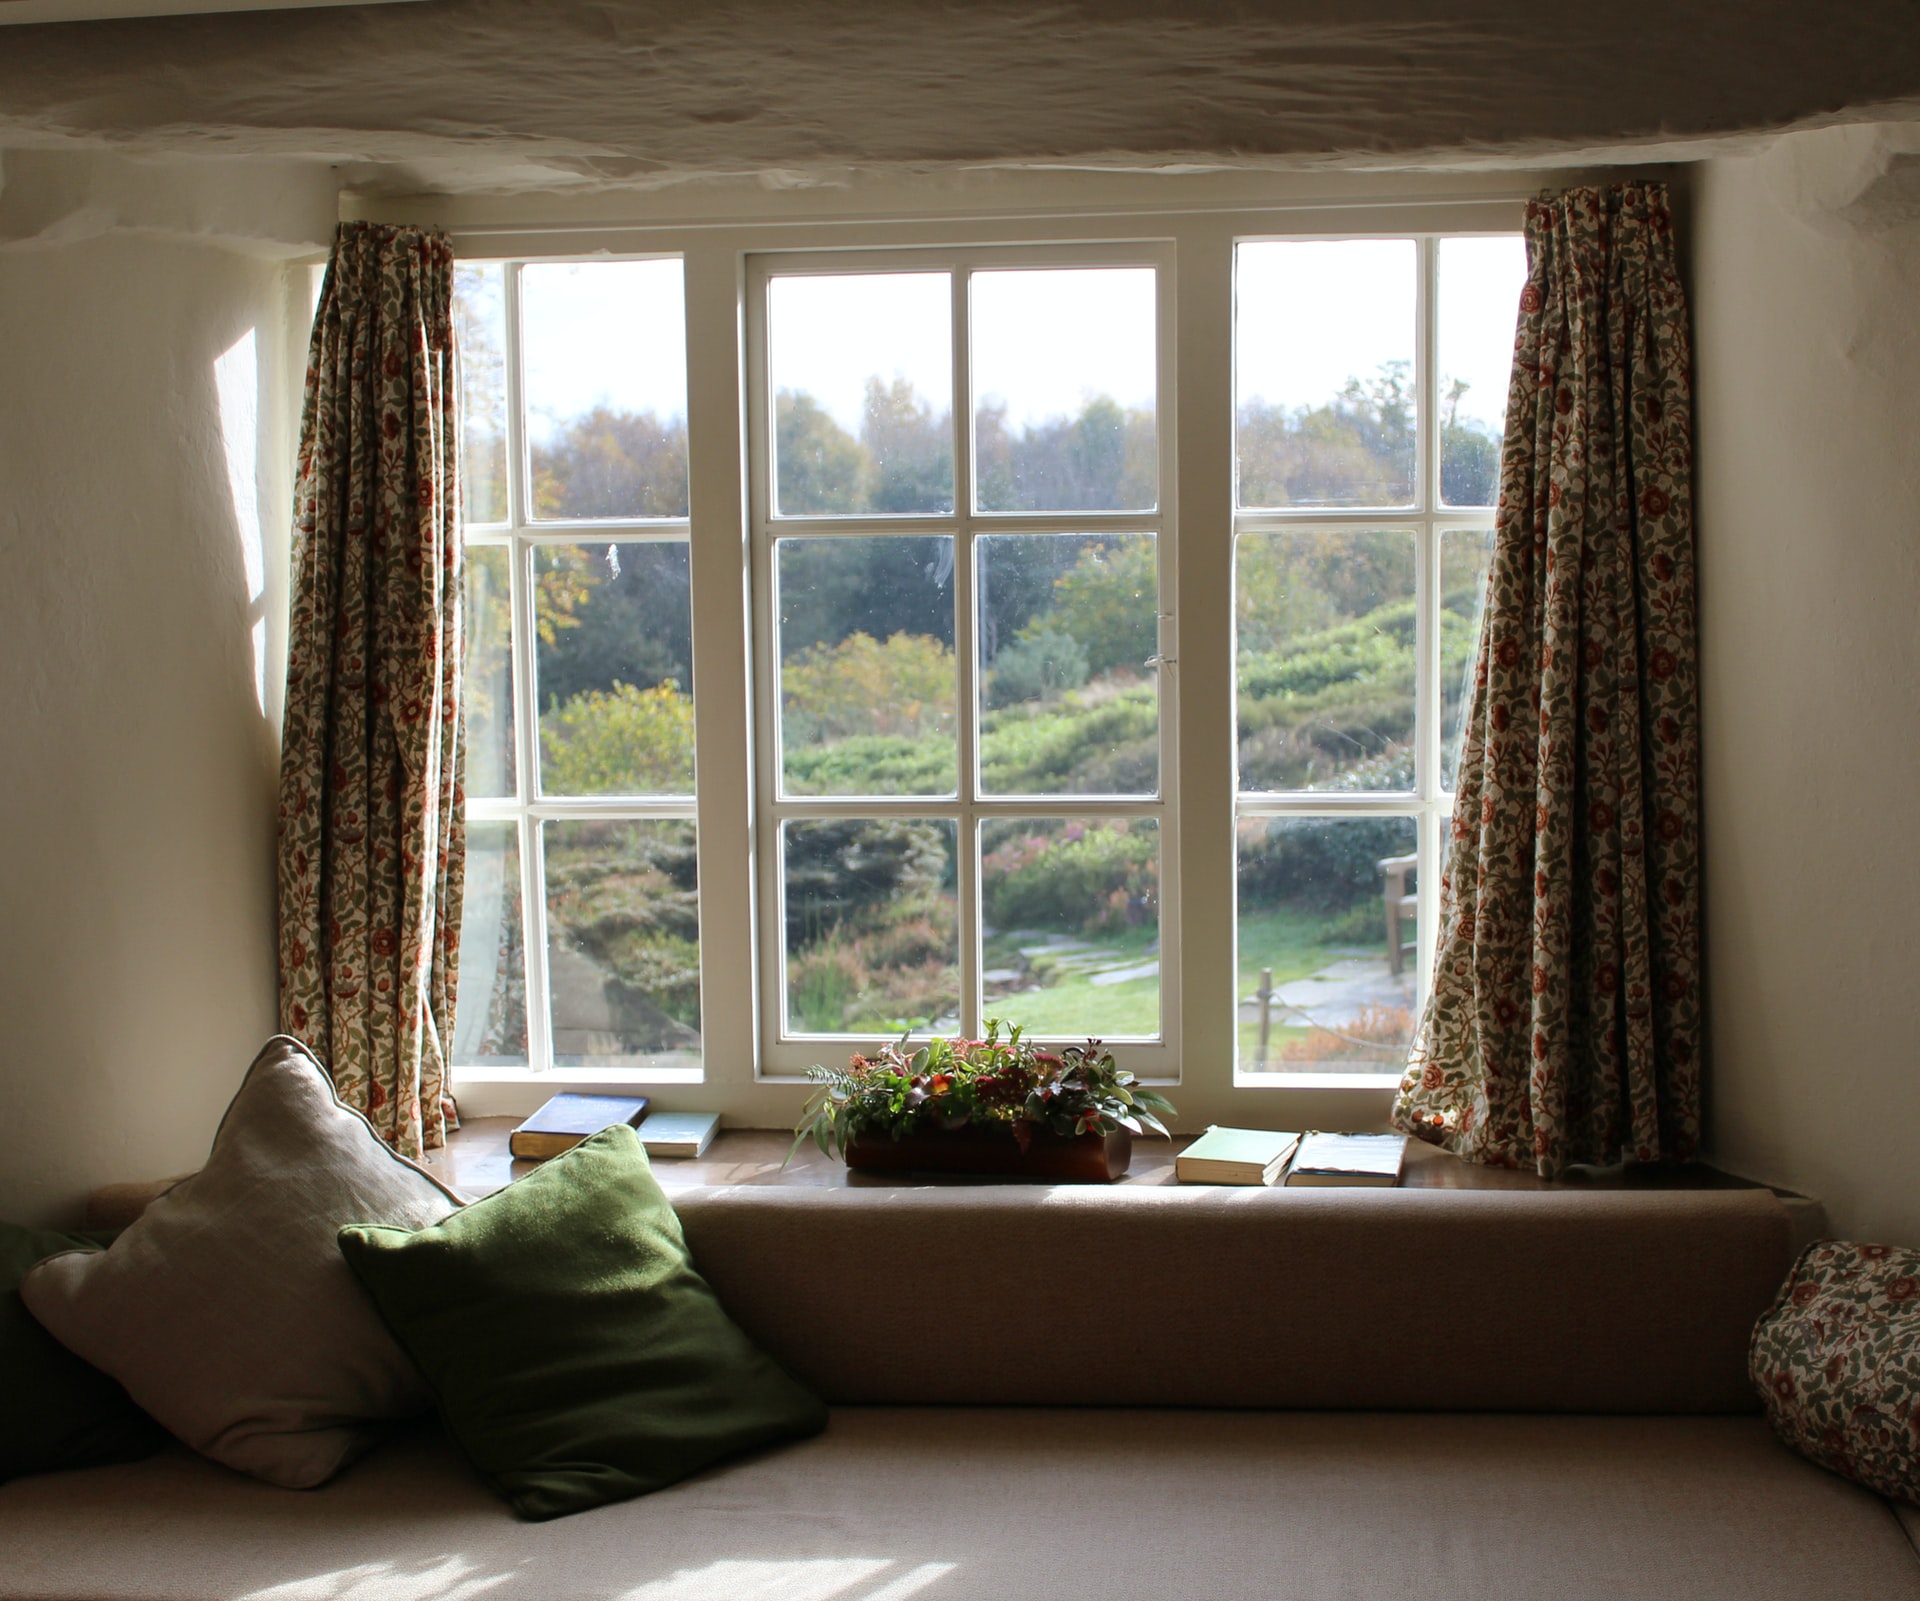 一个二层房间，有一个旧窗户，可以向后院望去。侧面有窗帘，窗户上有一个植物和一些书籍的窗台。